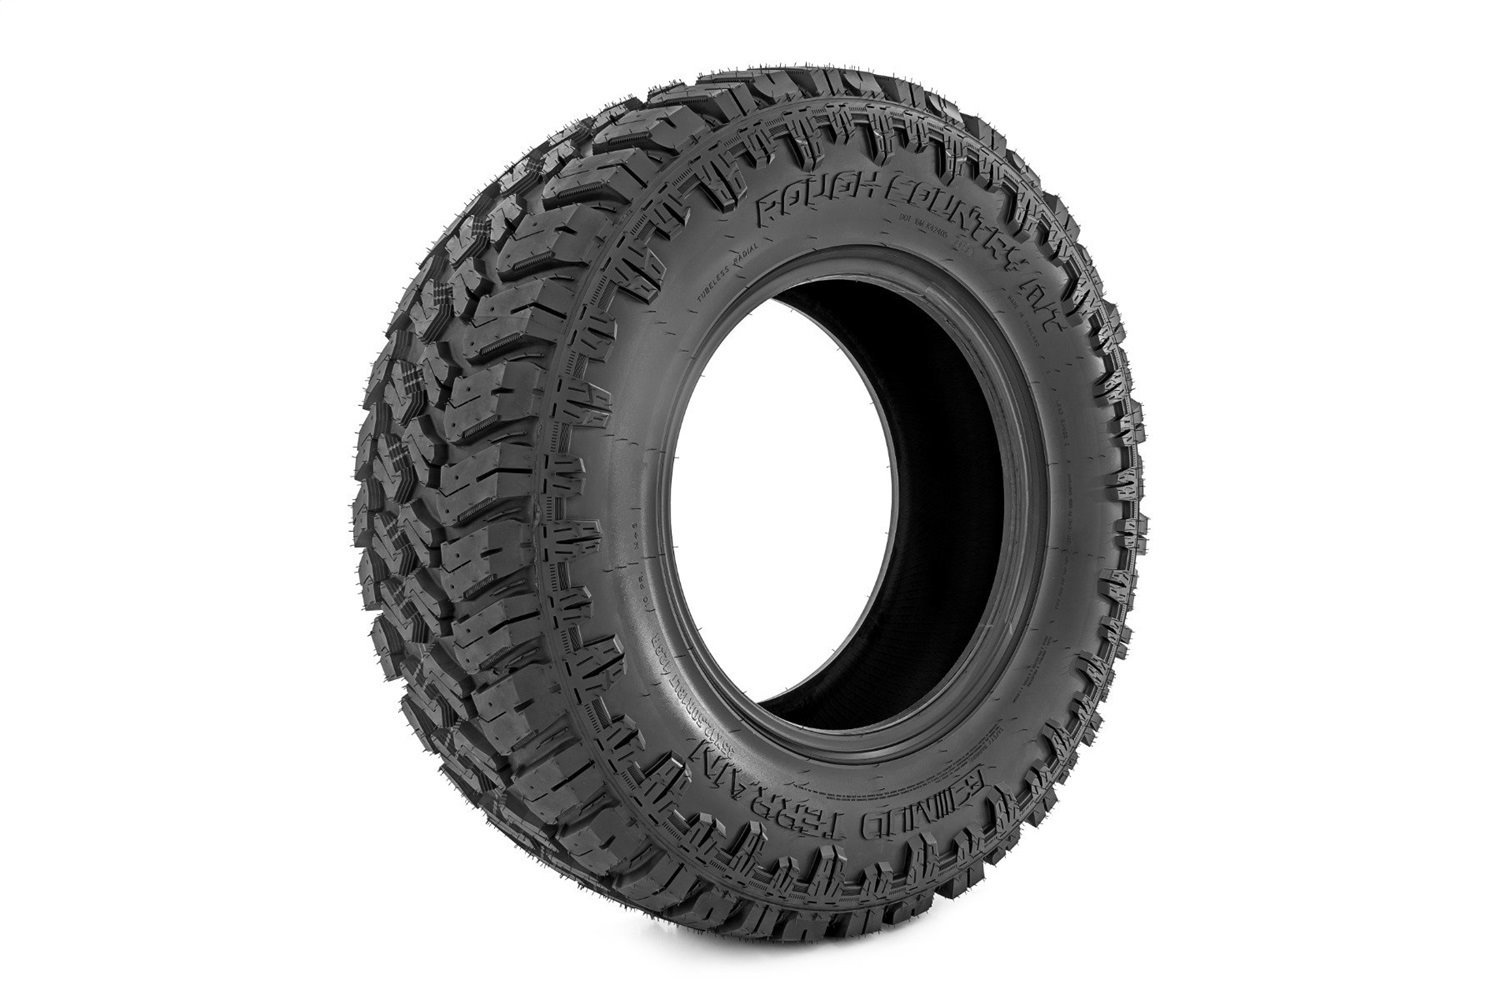 98010121 Dual Sidewall M/T Tire [35x12.50R20]